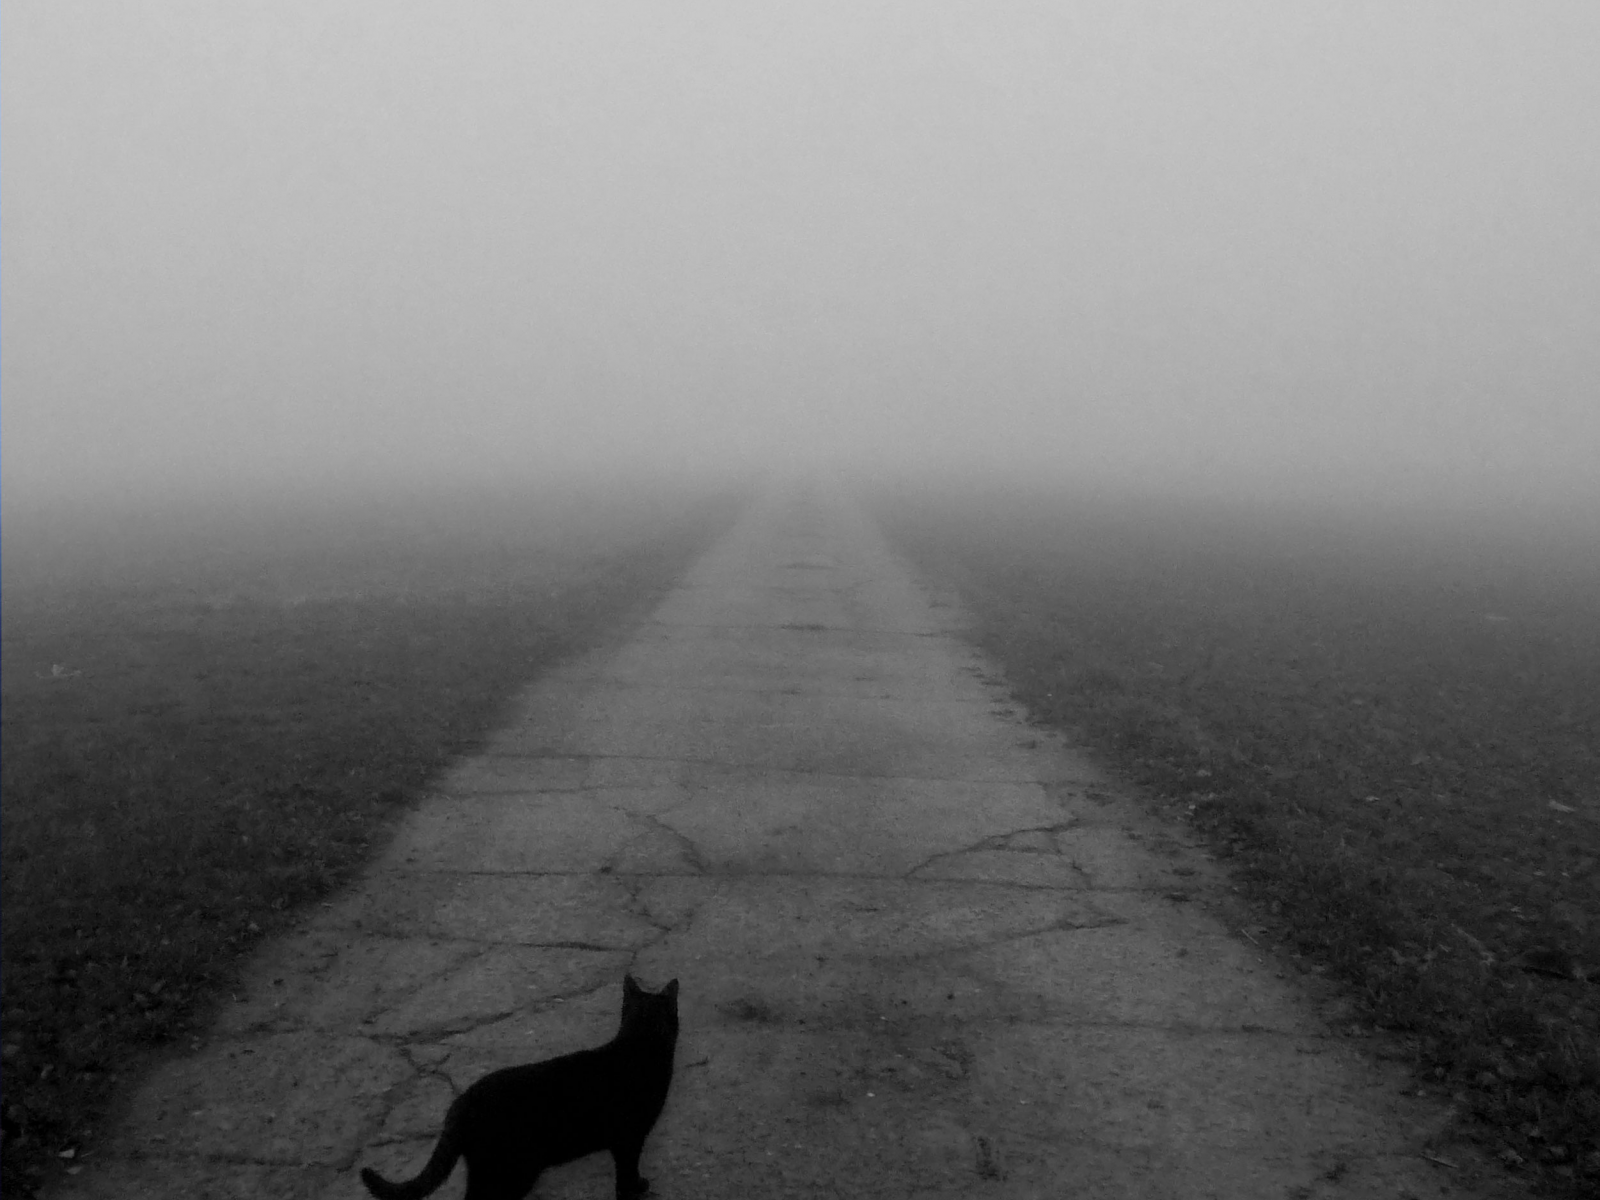 идущий, кот, чёрный, в никуда